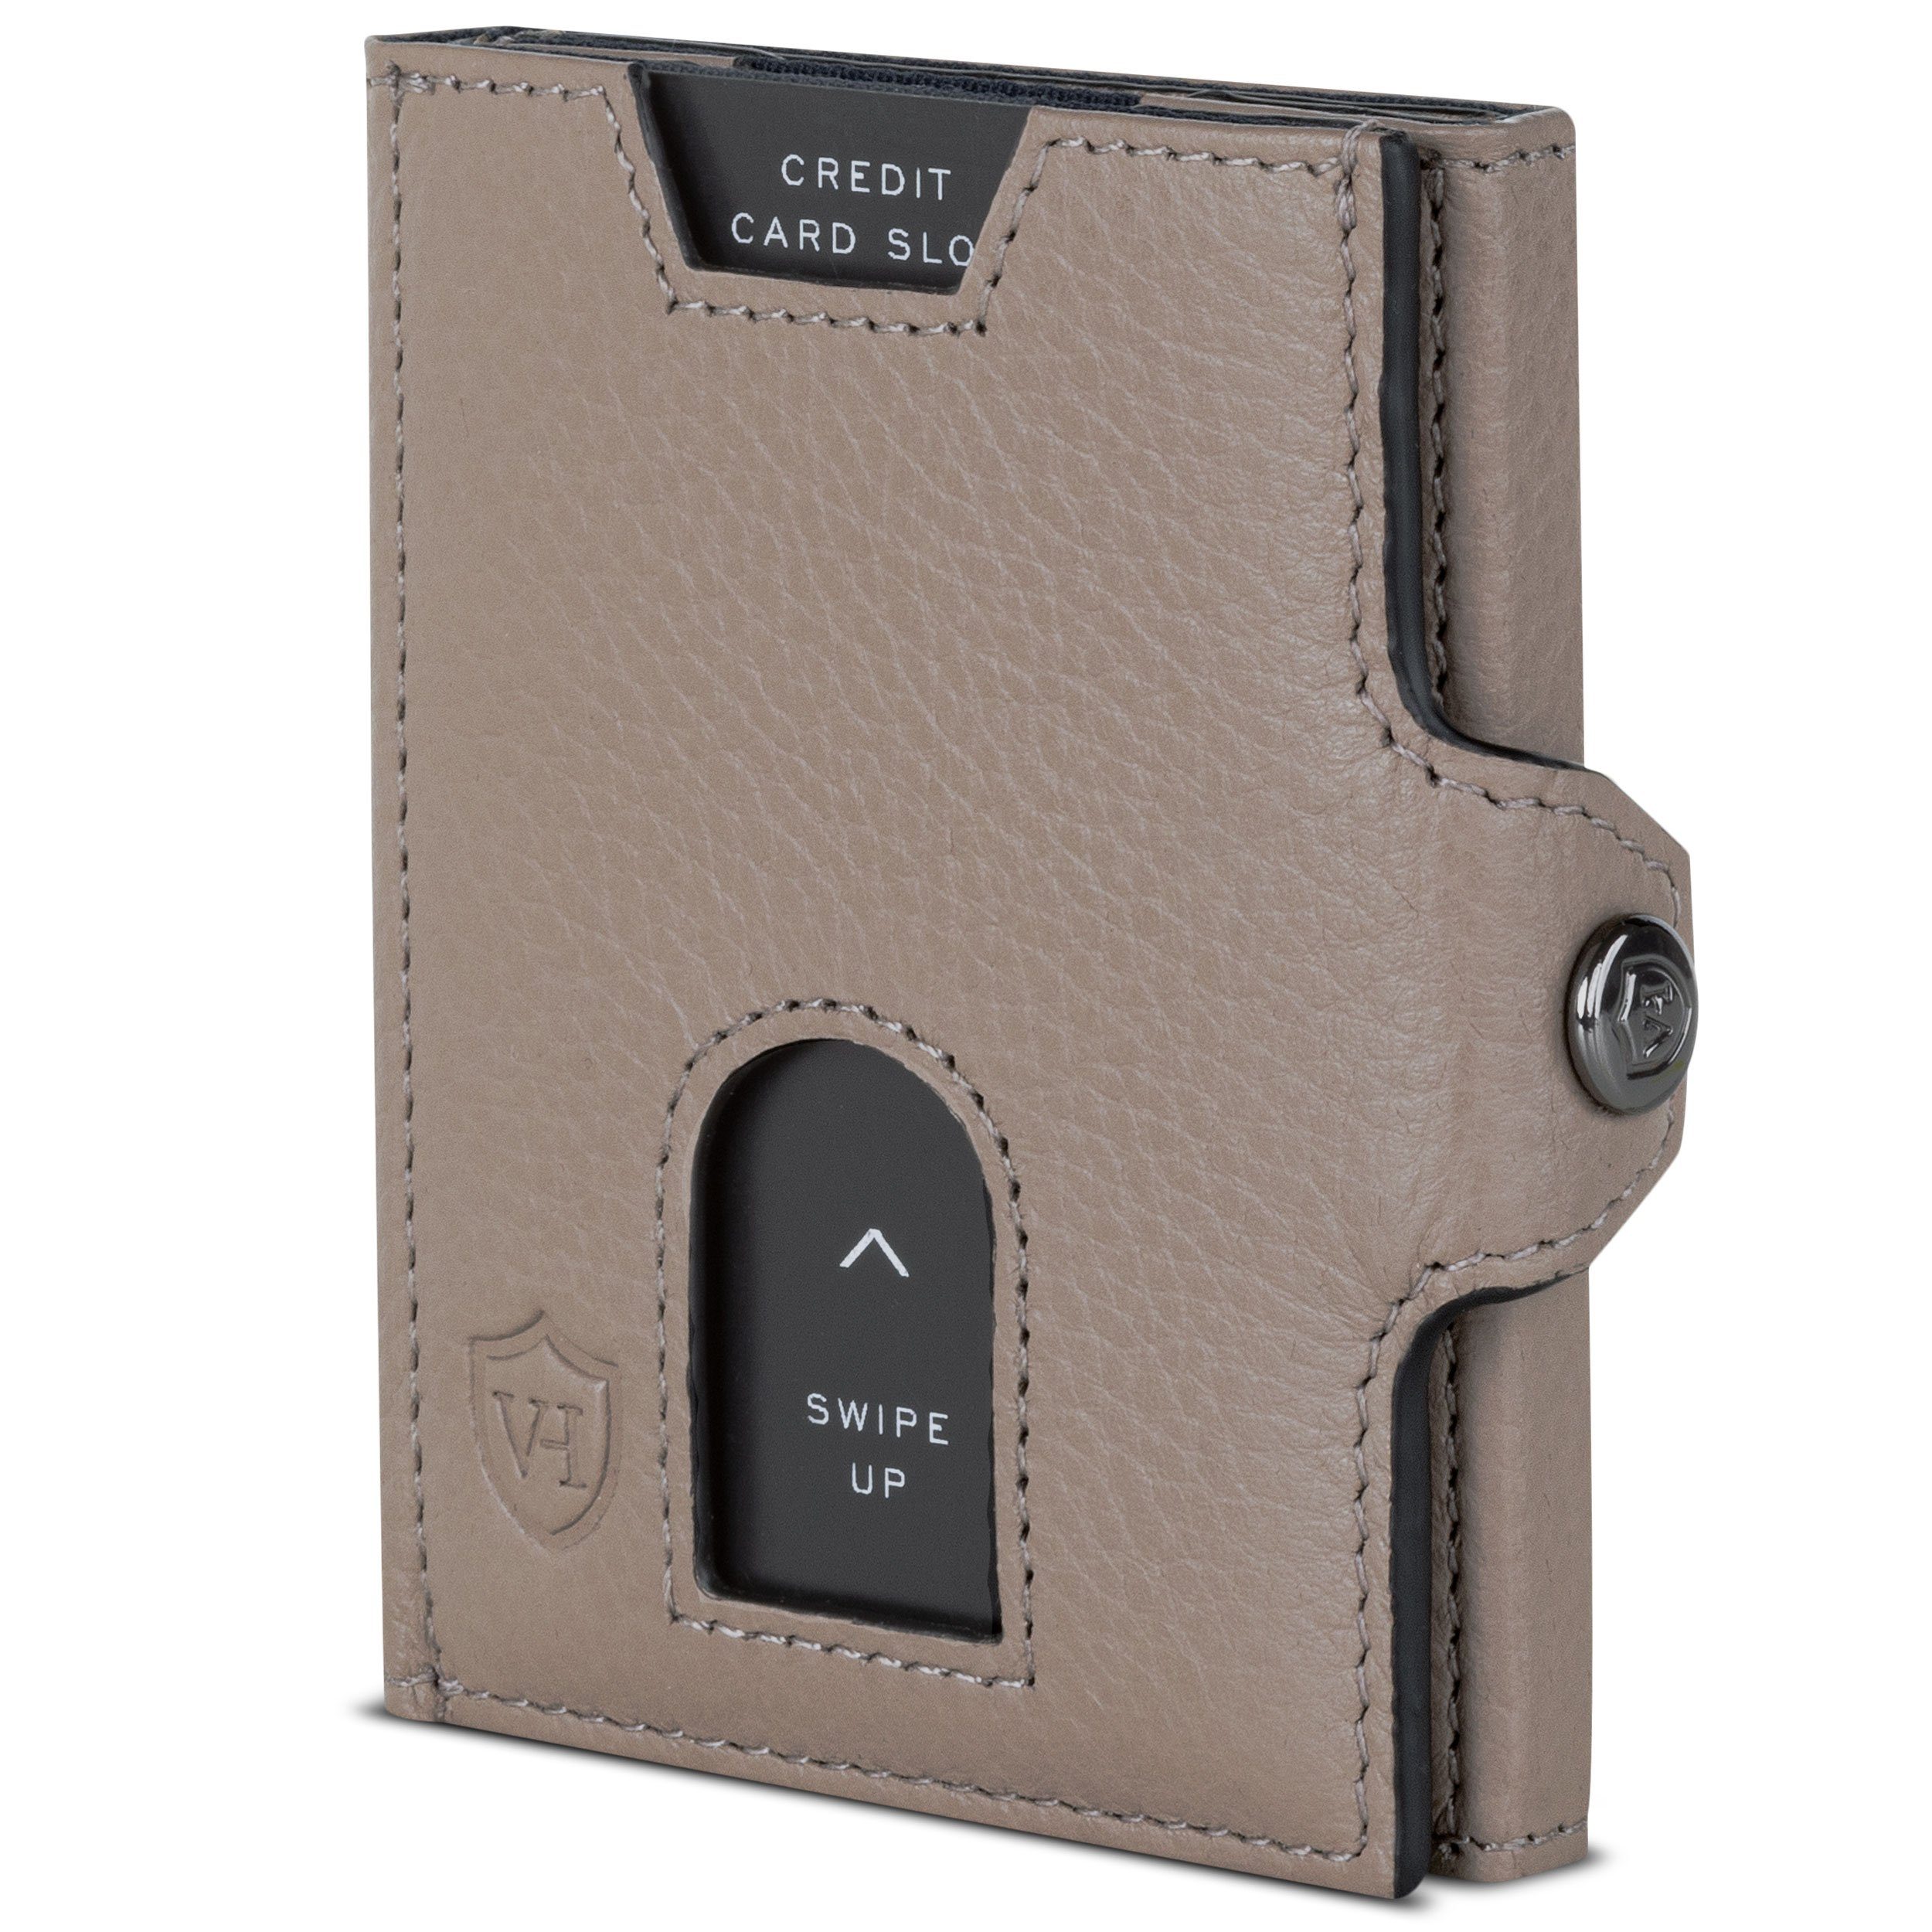 VON HEESEN Geldbörse Whizz Wallet mit RFID-Schutz und 6 Kartenfächer, Slim Wallet Geldbeutel Portemonnaie inkl. RFID-Schutz & Geschenkbox